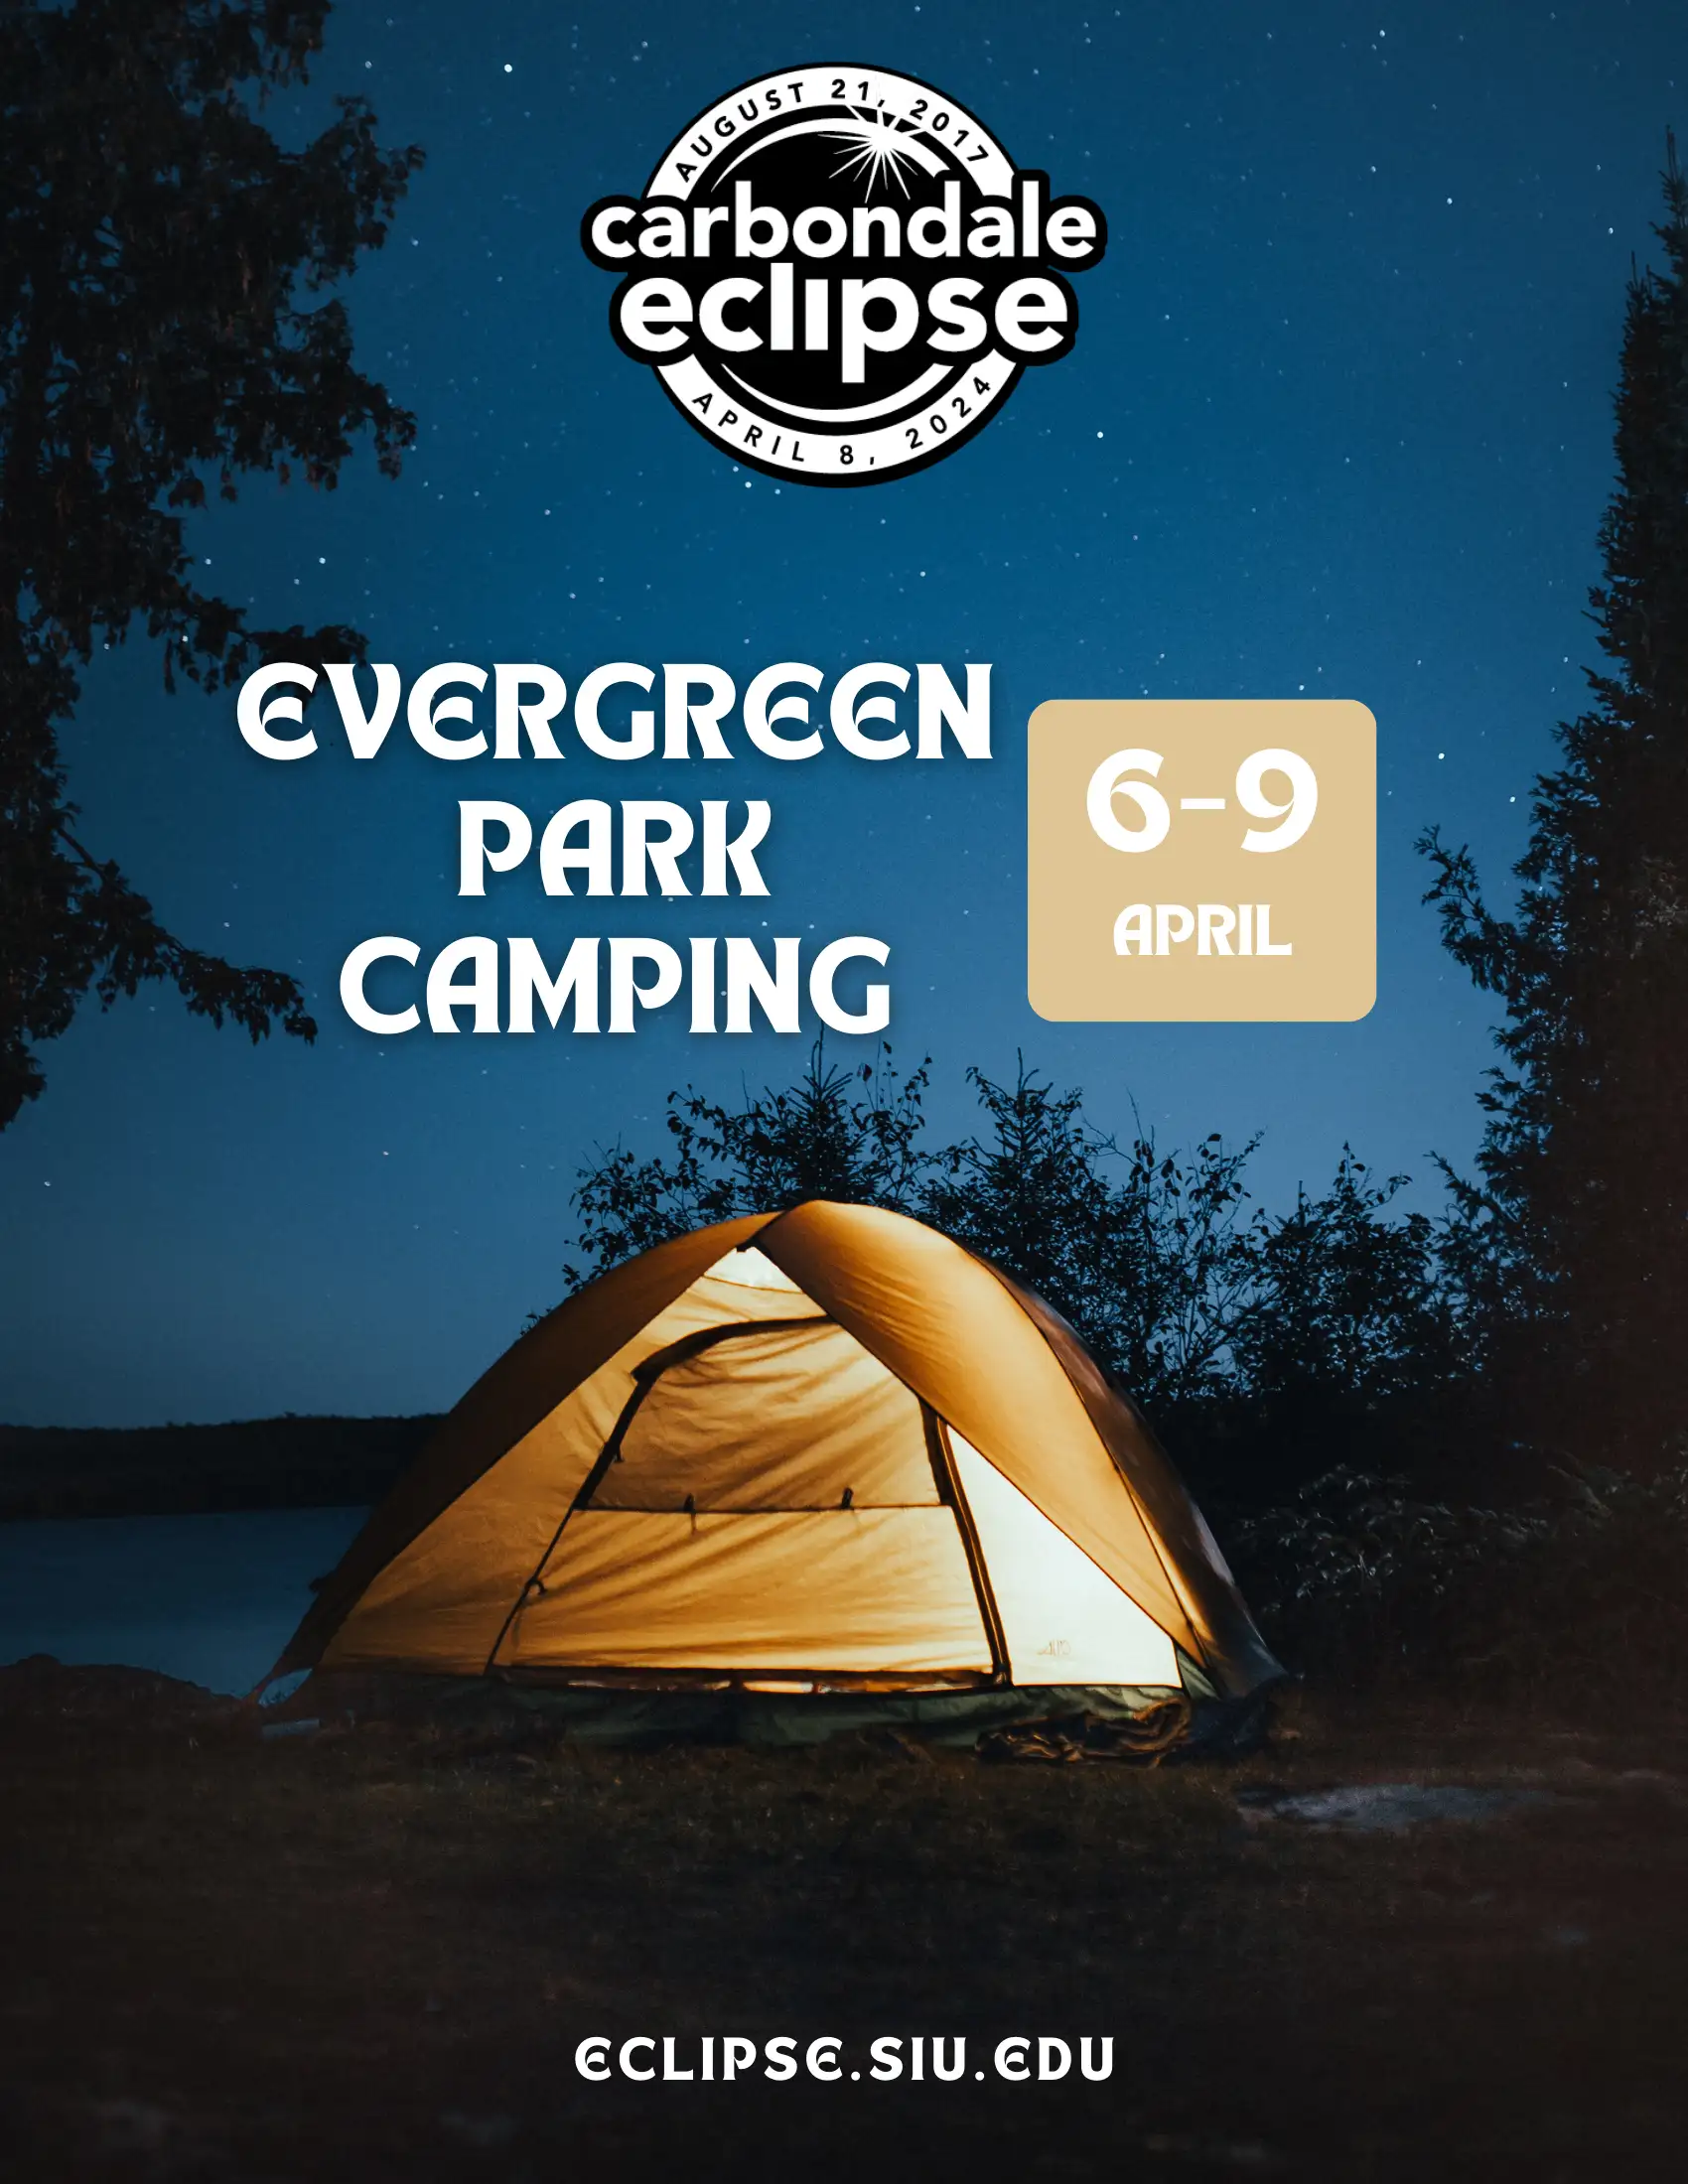 camping at evergreen park